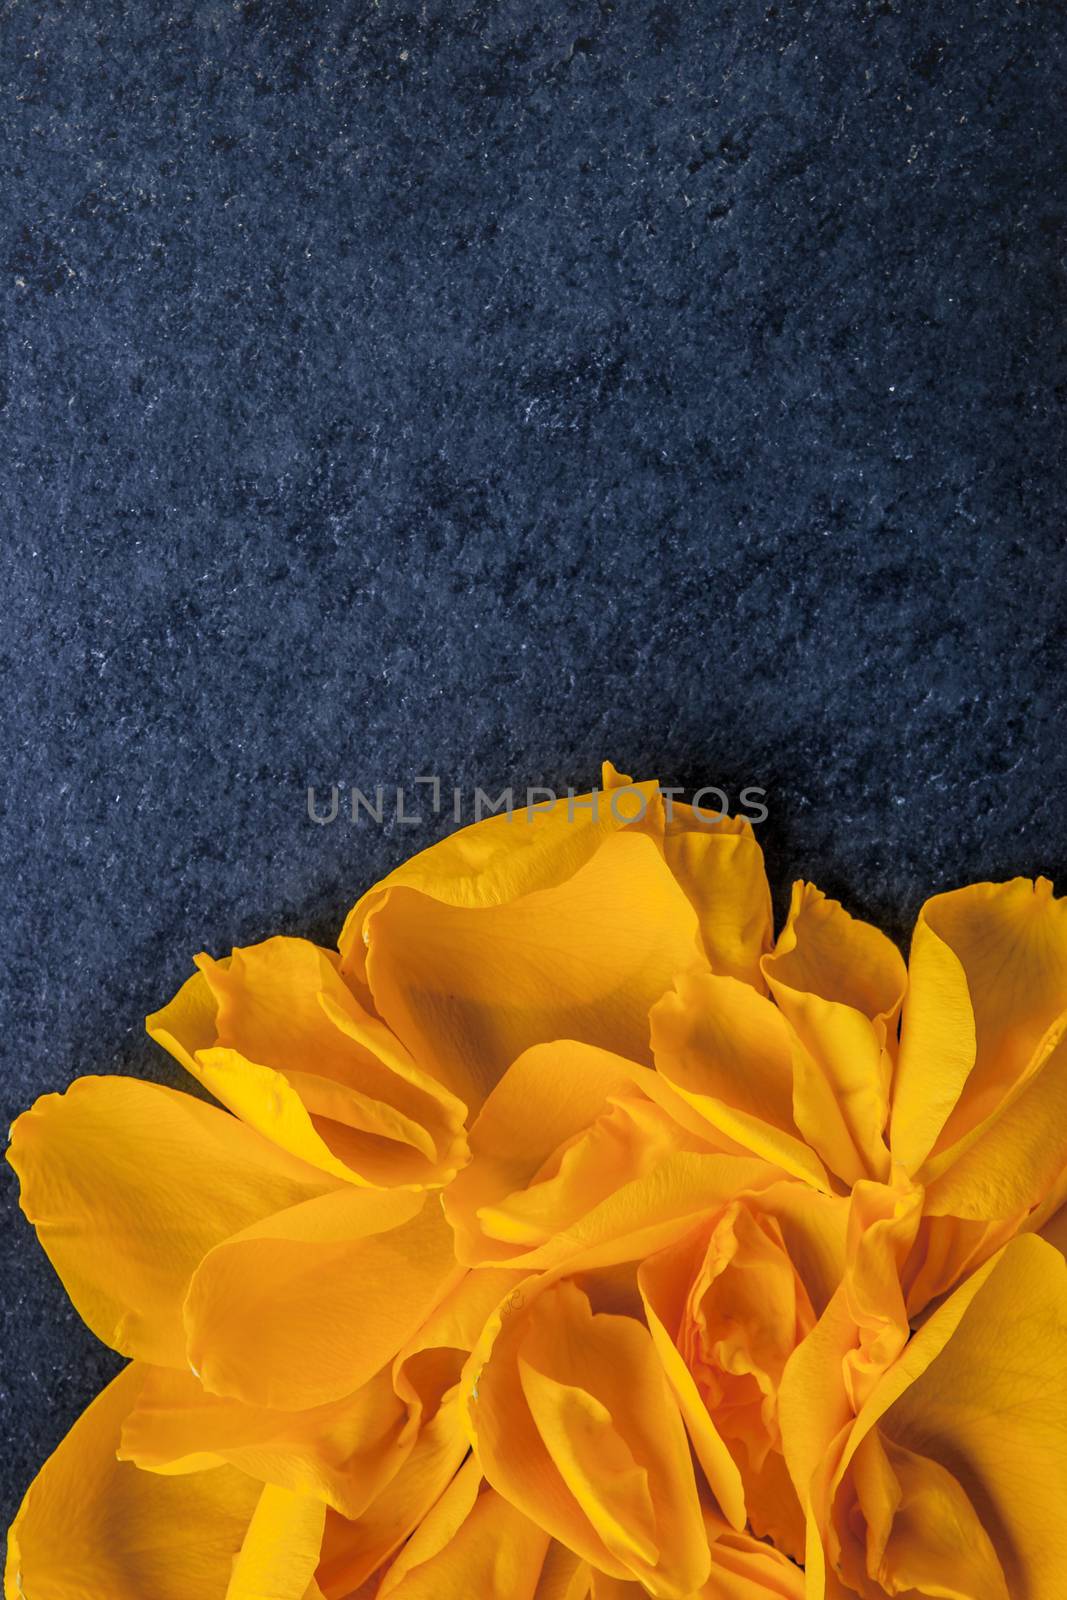 Rose petal on the blue background vertical by Deniskarpenkov